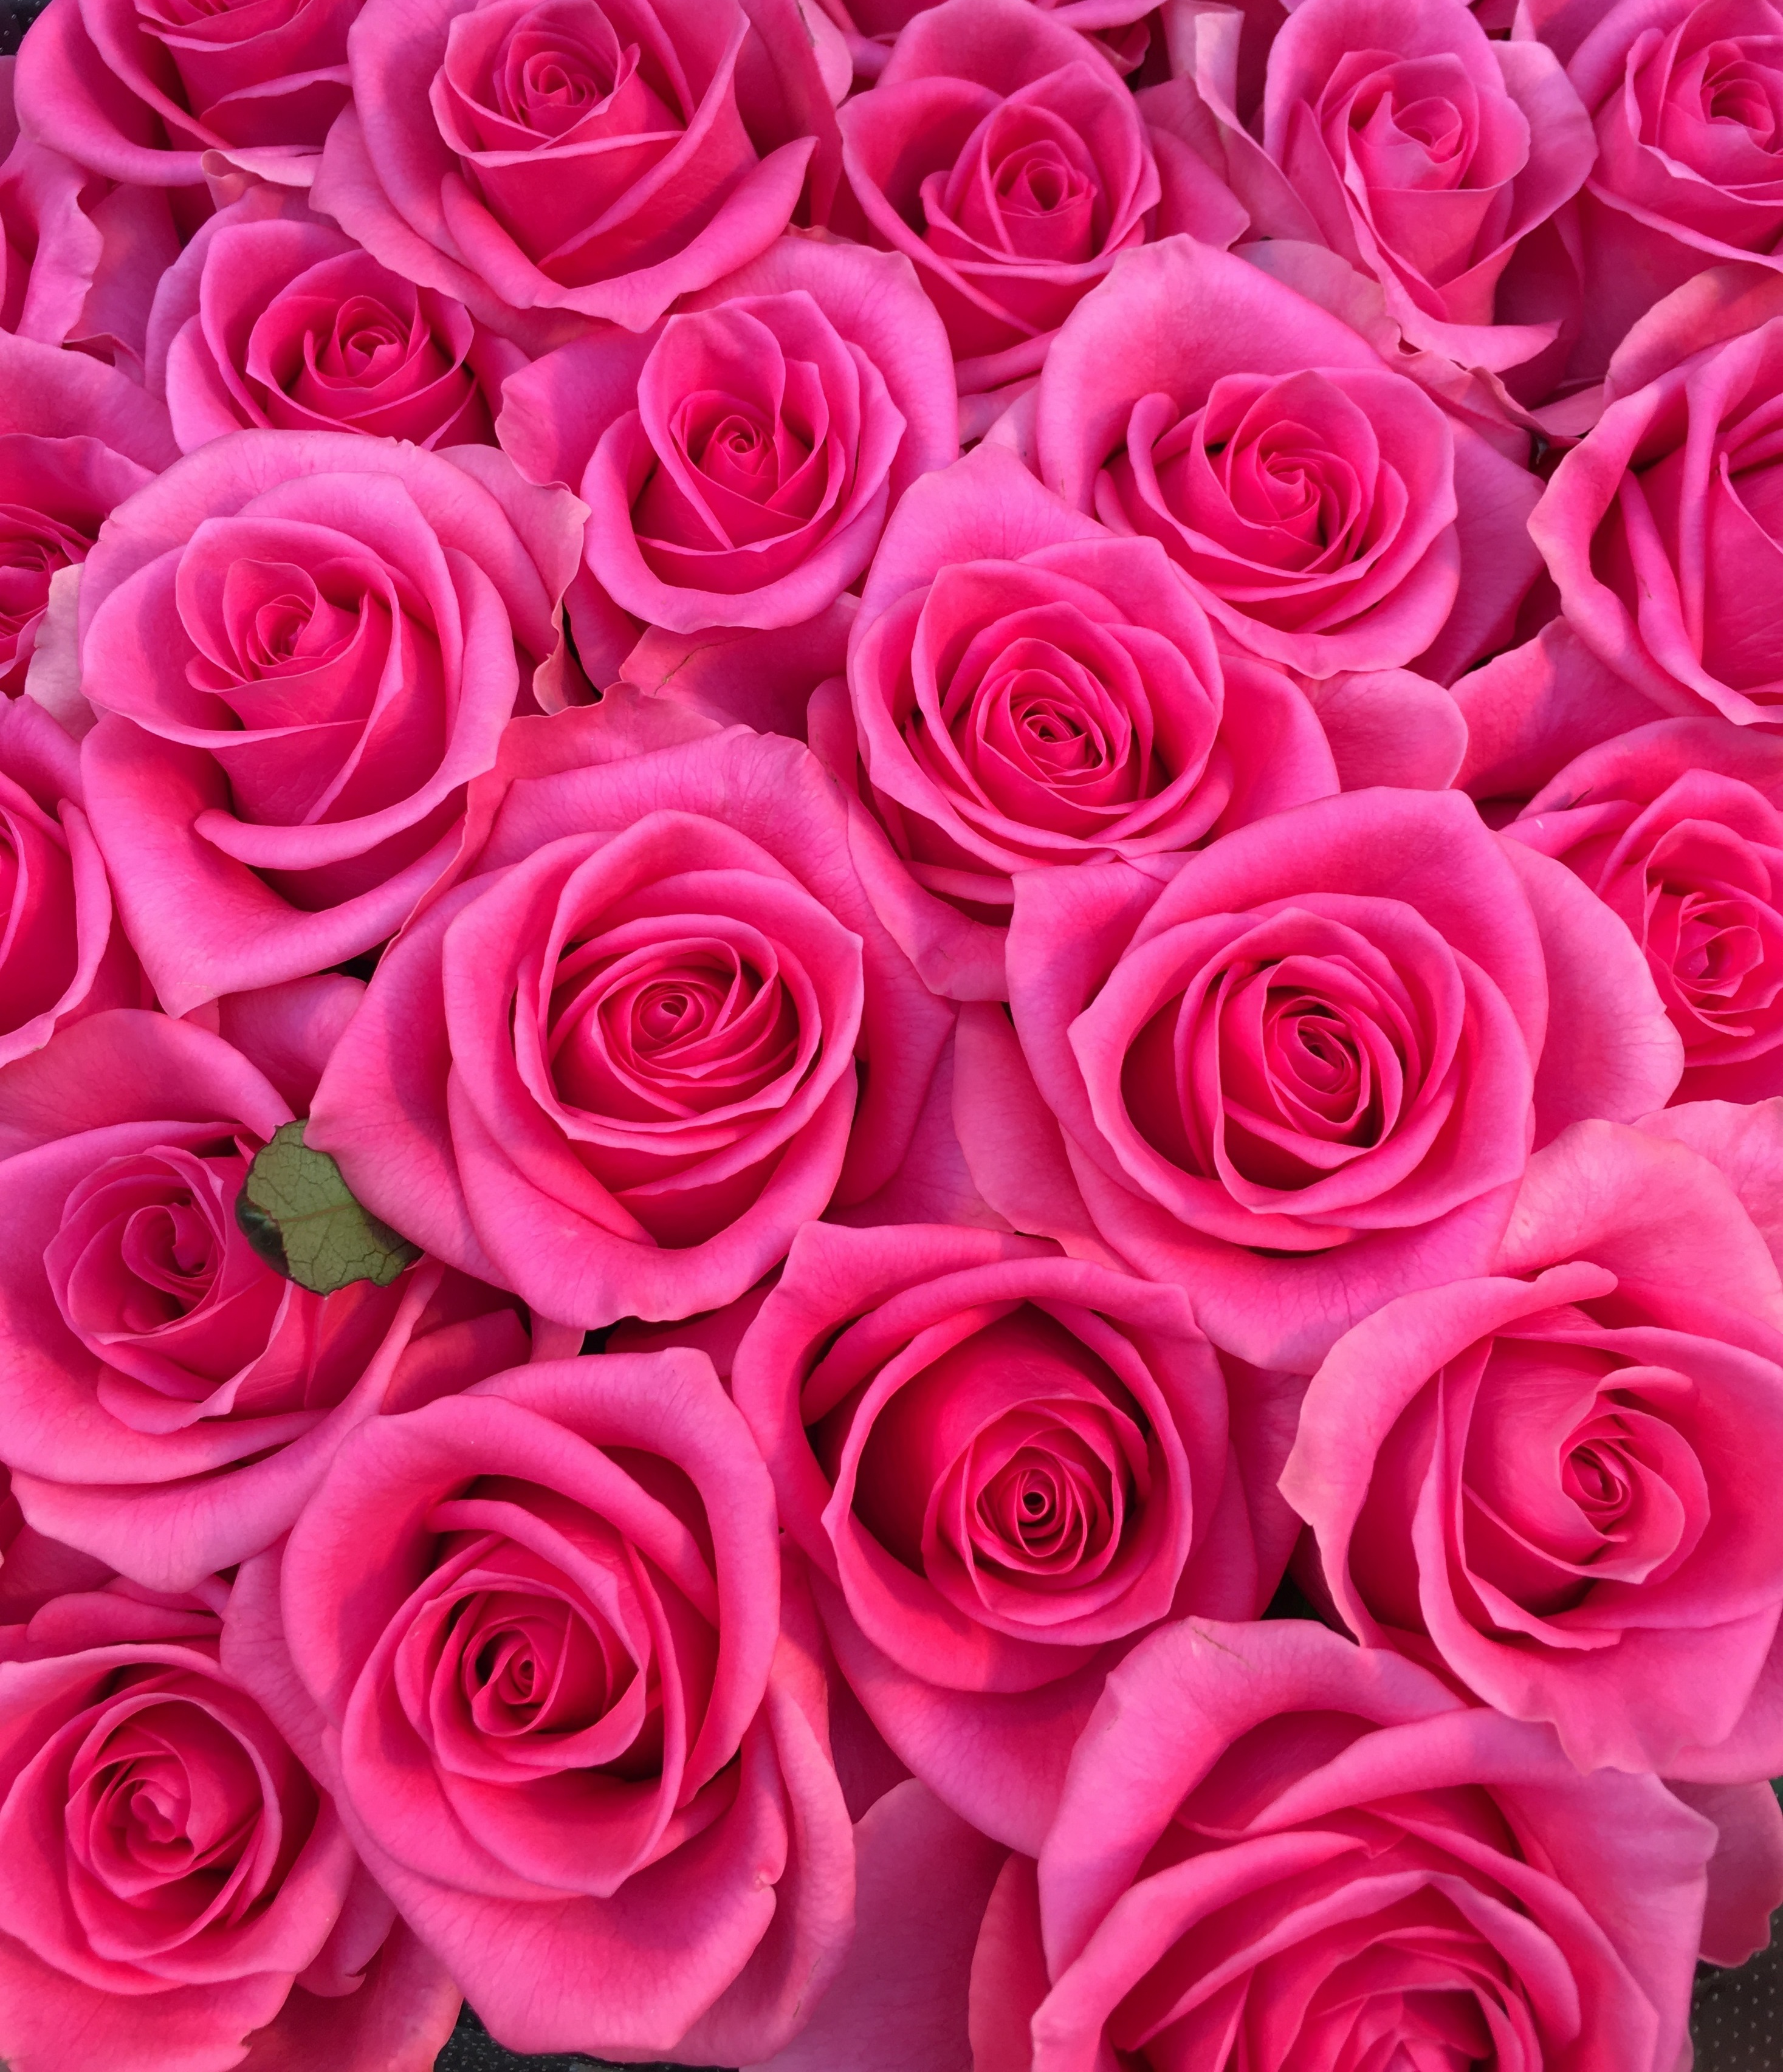 花屋 Hanaya Pinkrose 可愛い人 100本のバラ 100 の愛情 特別な花束 豪華な花束 プロポーズの花束 福岡県北九州市小倉北区のフラワーショップです フラワースタンド バルーン フラワーアレンジメント 胡蝶蘭などギフト商品も取り扱っております